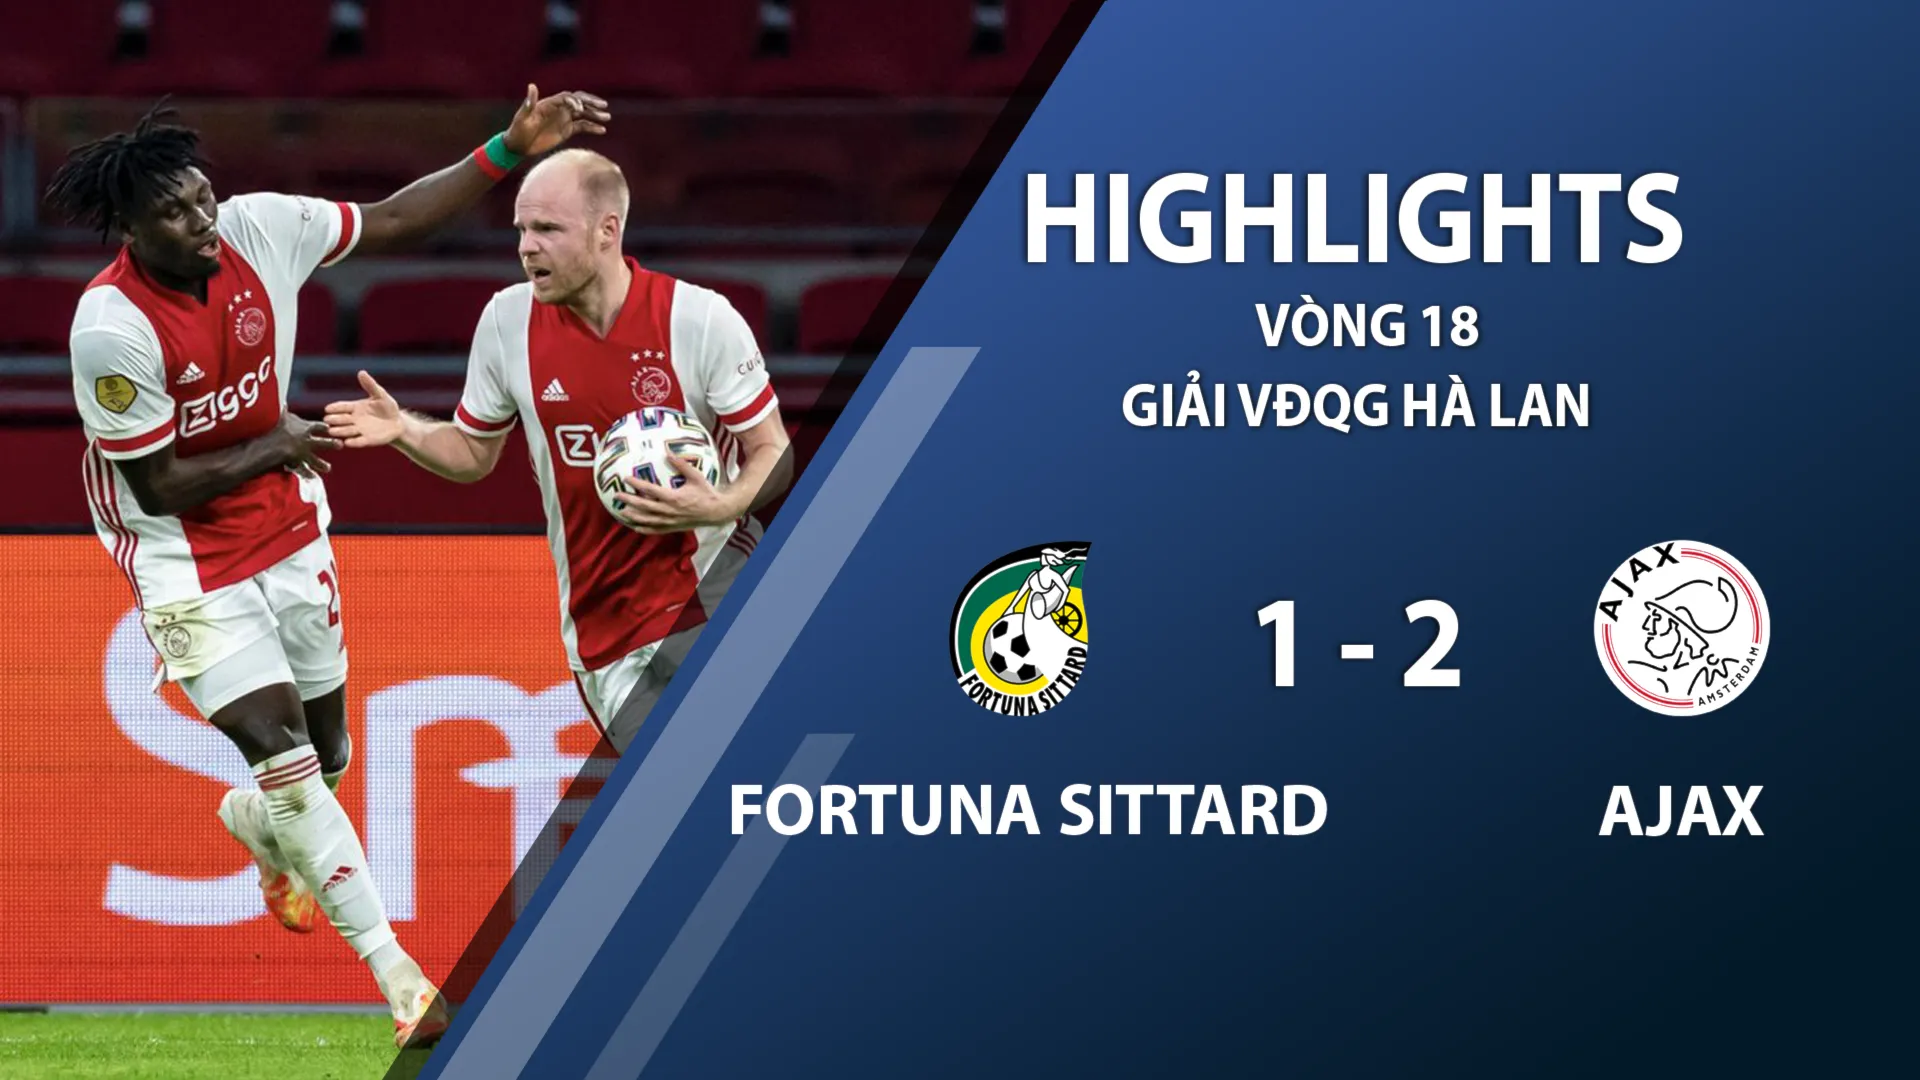 Highlights Fortuna Sittard 1-2 Ajax (vòng 18 giải VĐQG Hà Lan 2020/21)